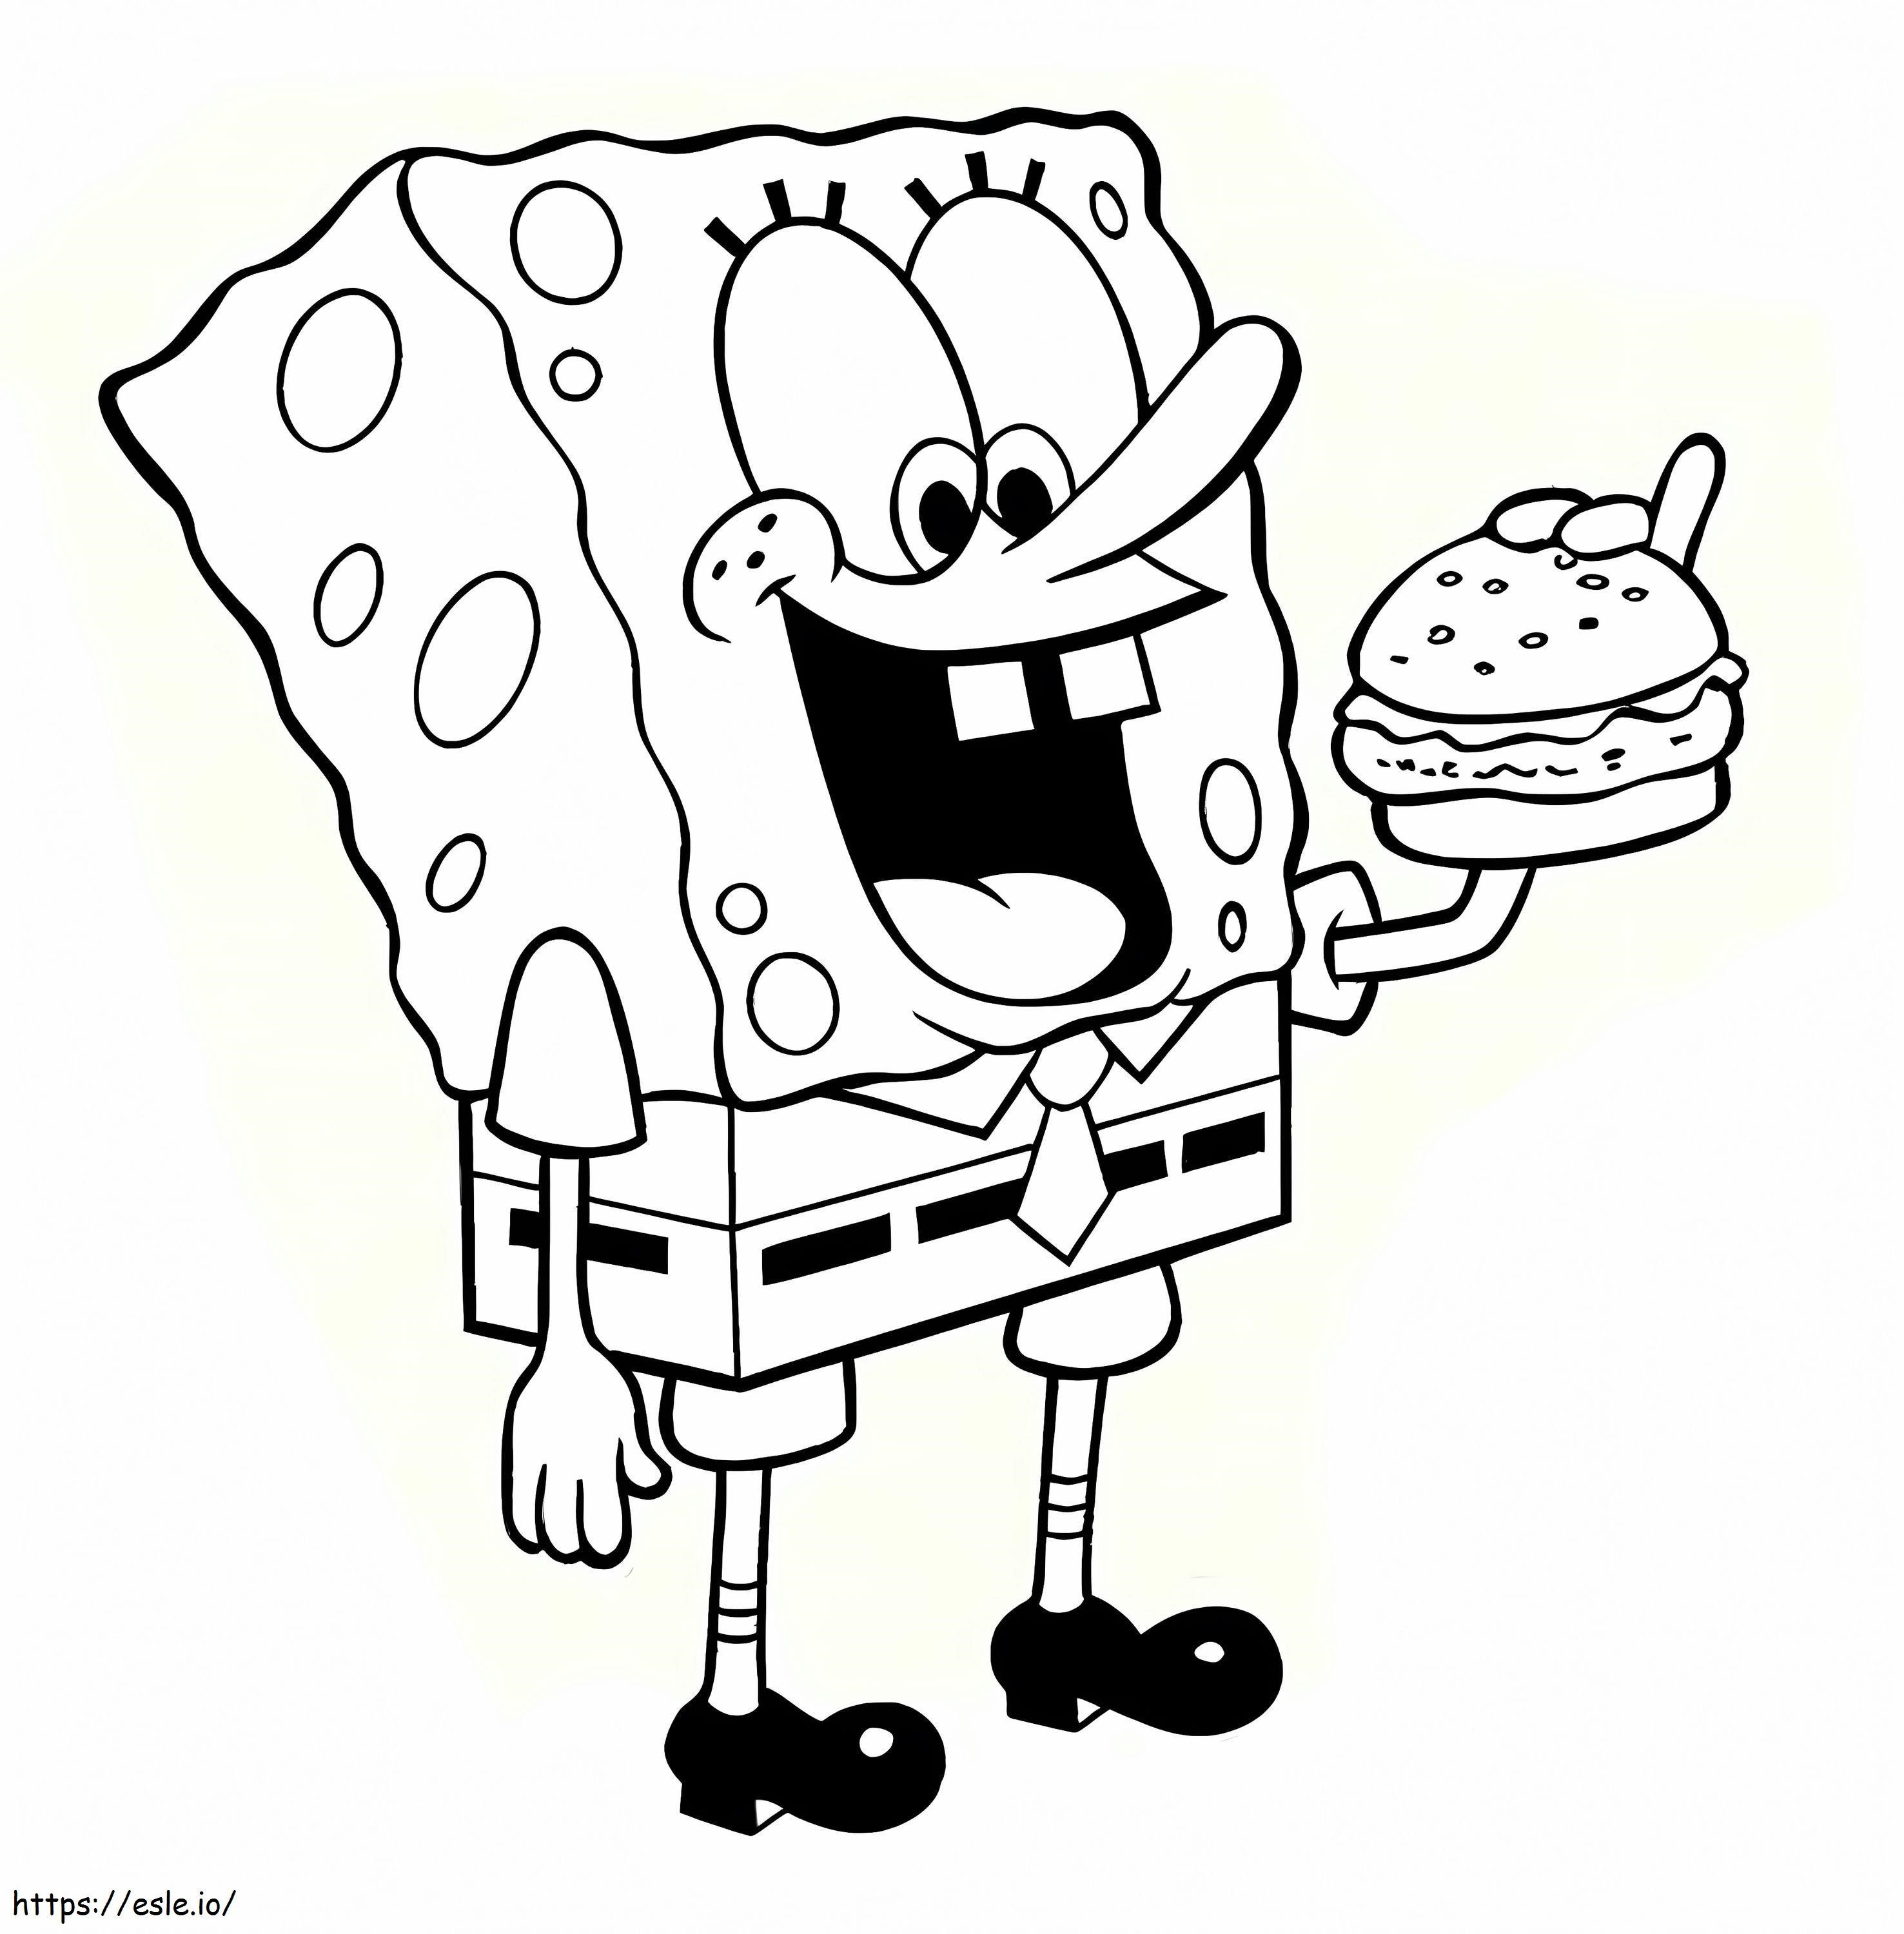 Spongebob Eating Hamburger coloring page